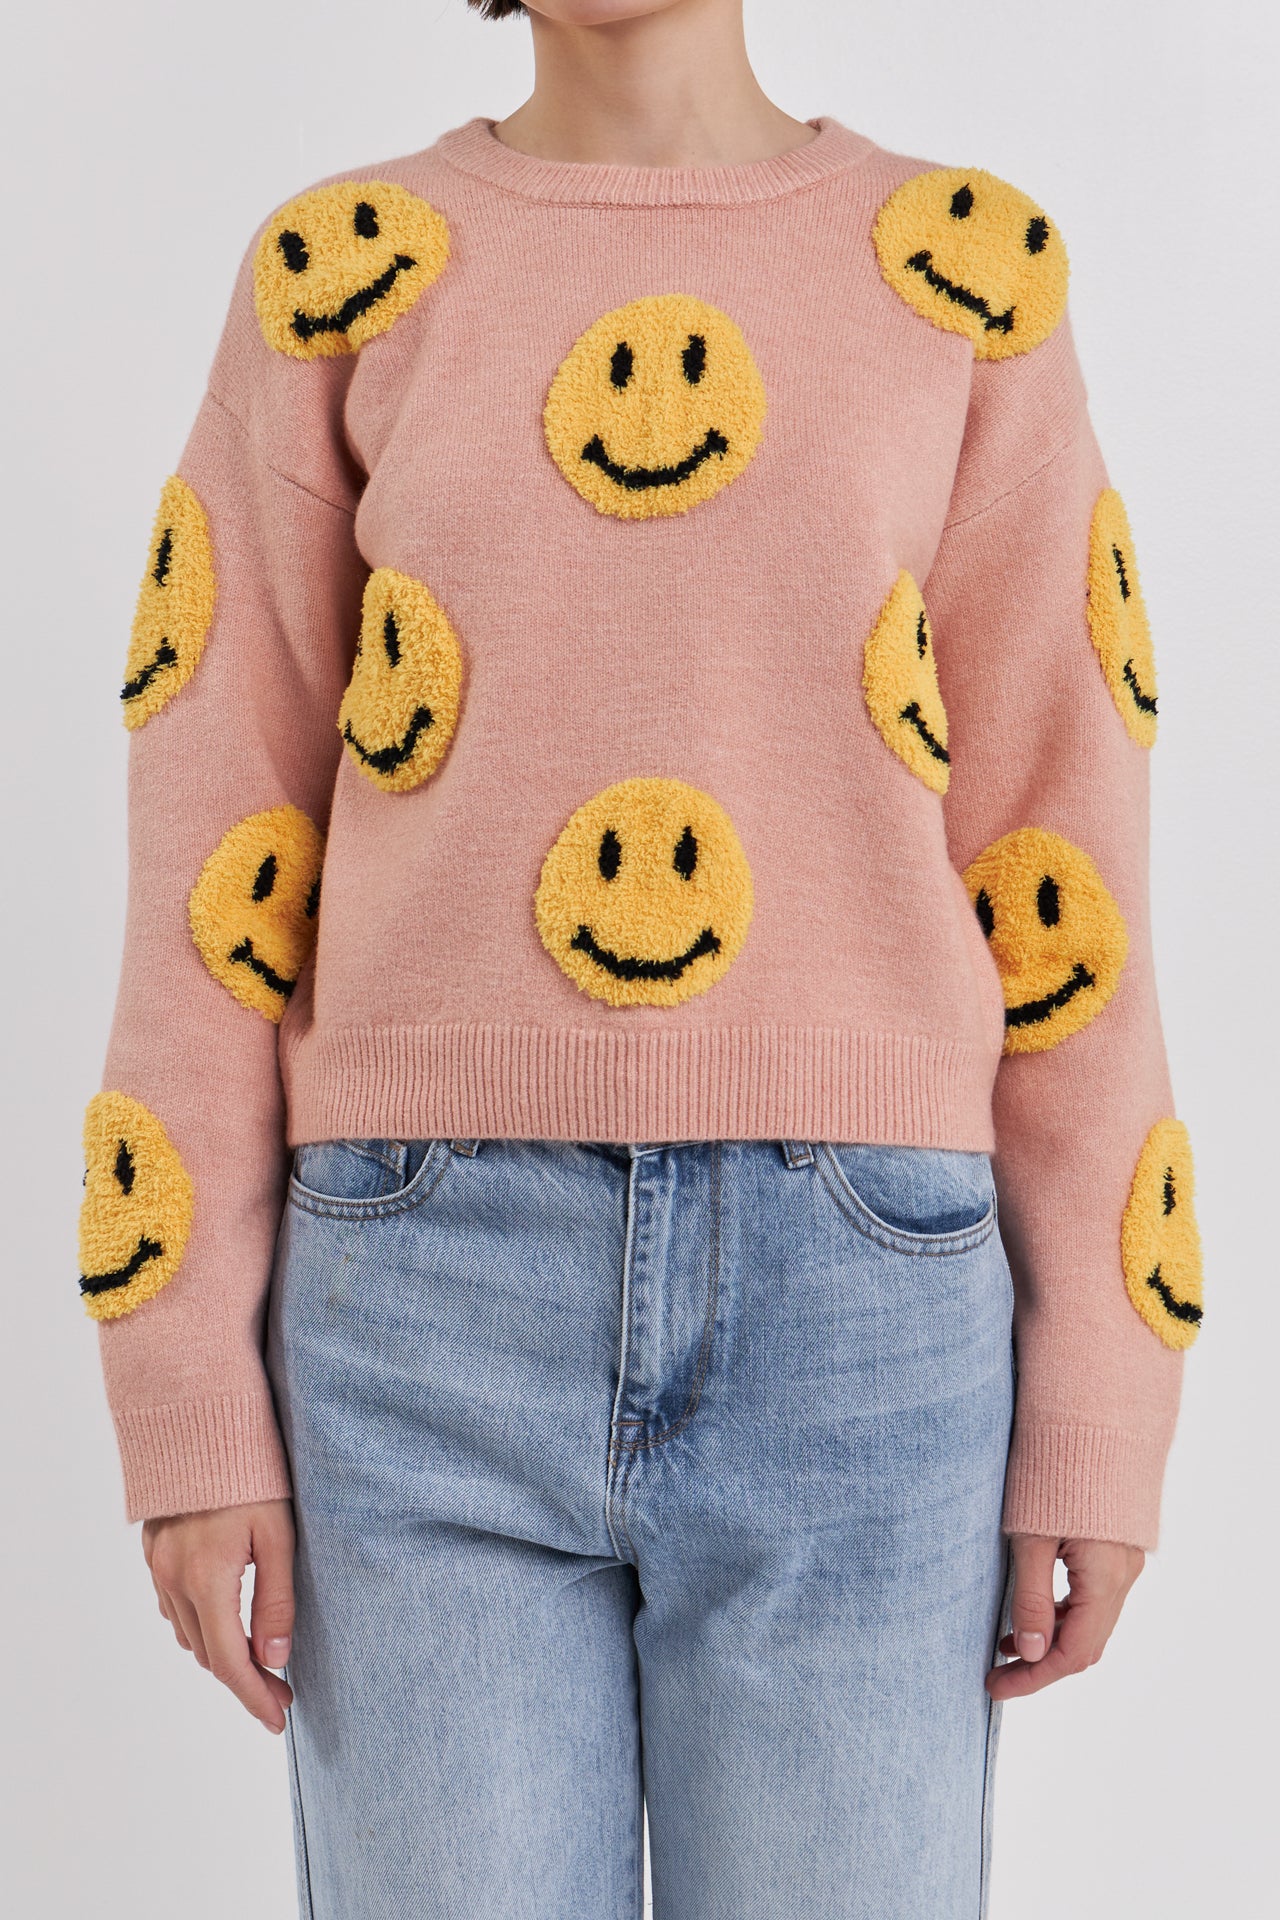 Suéter con cara sonriente